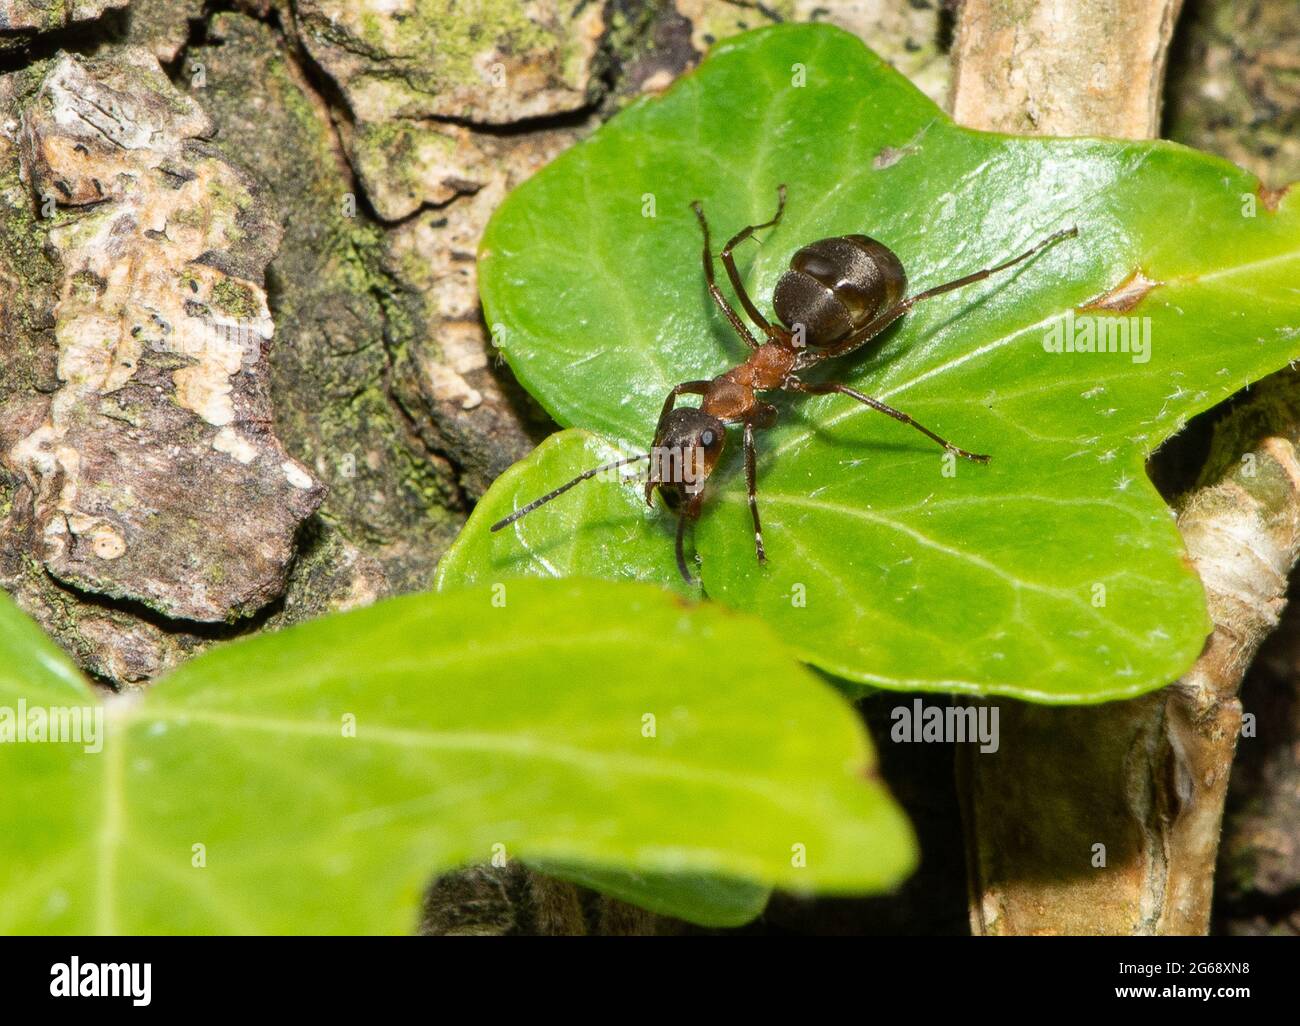 Una formica di legno del sud, Arnside, Cumbria del sud, Regno Unito. Foto Stock